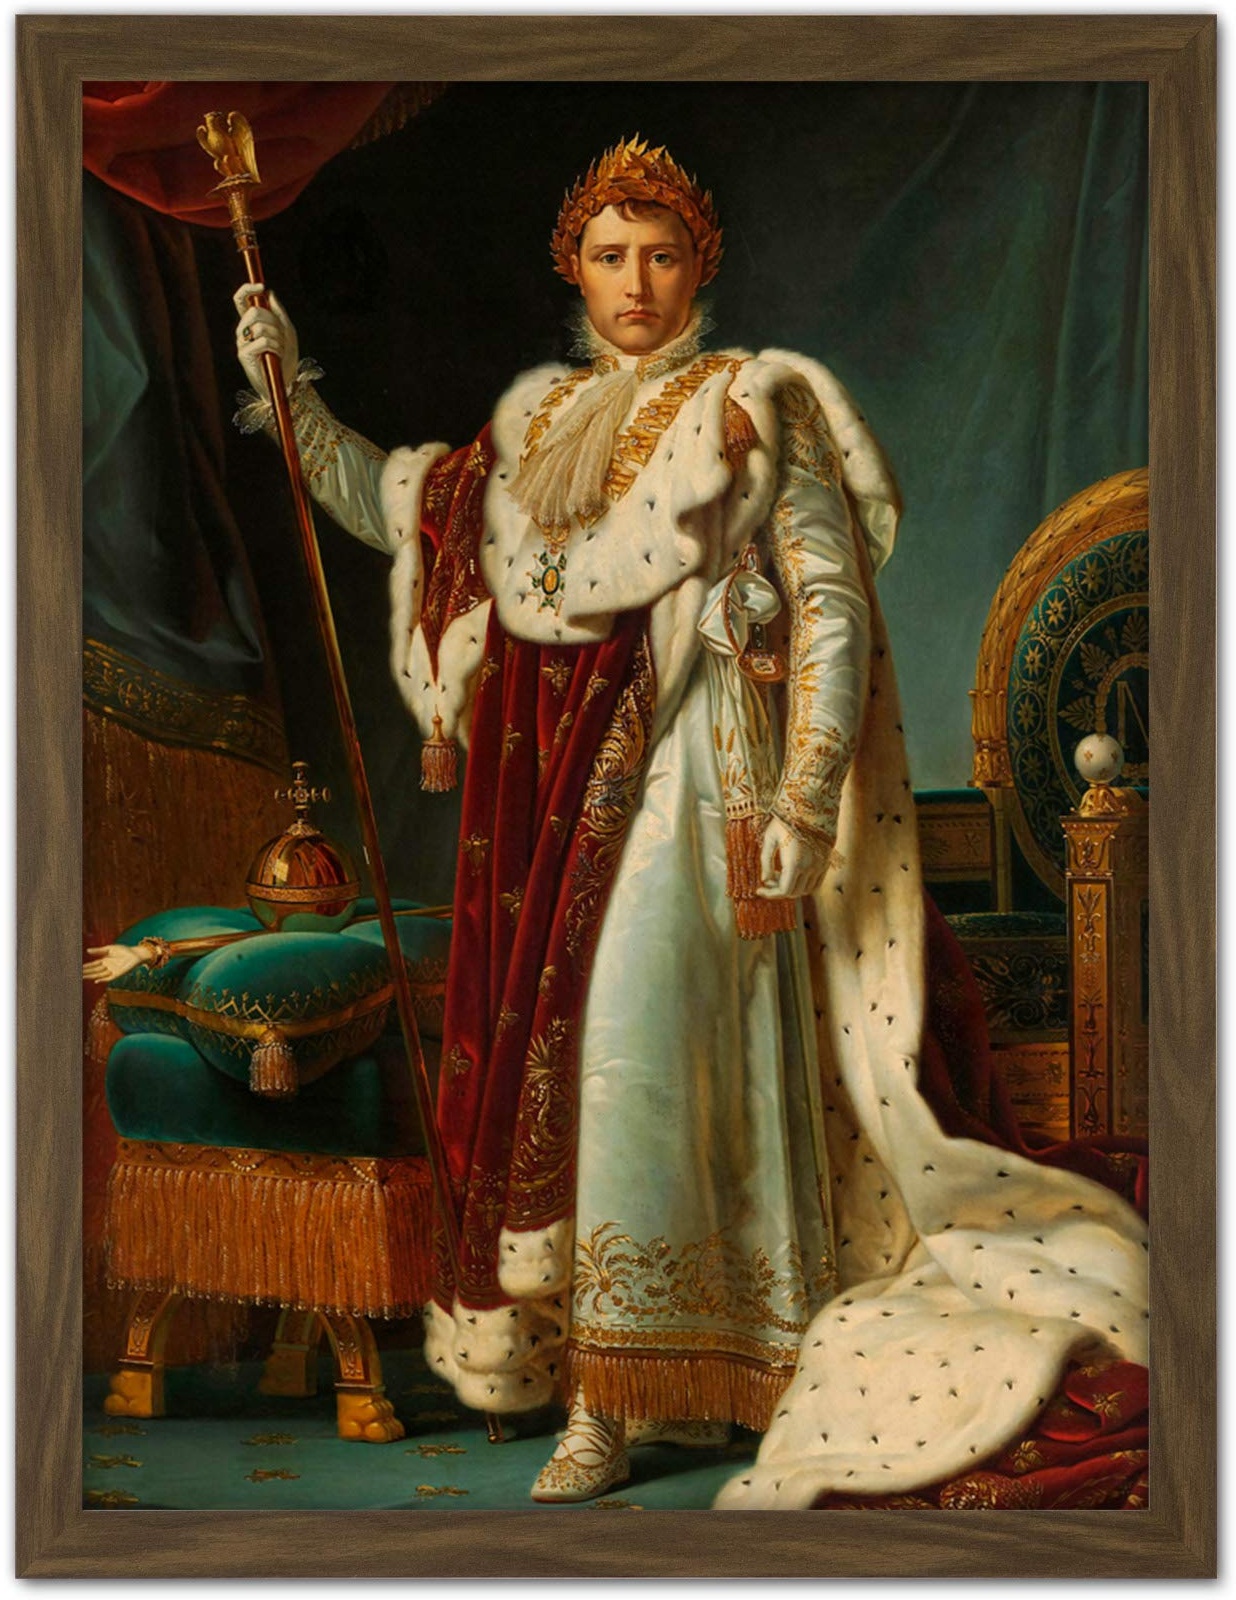 Gerard Portrait Emperor Napoleon I Bonaparte Artwork Framed Wall Art Print 18X24 Inch Porträt Wand